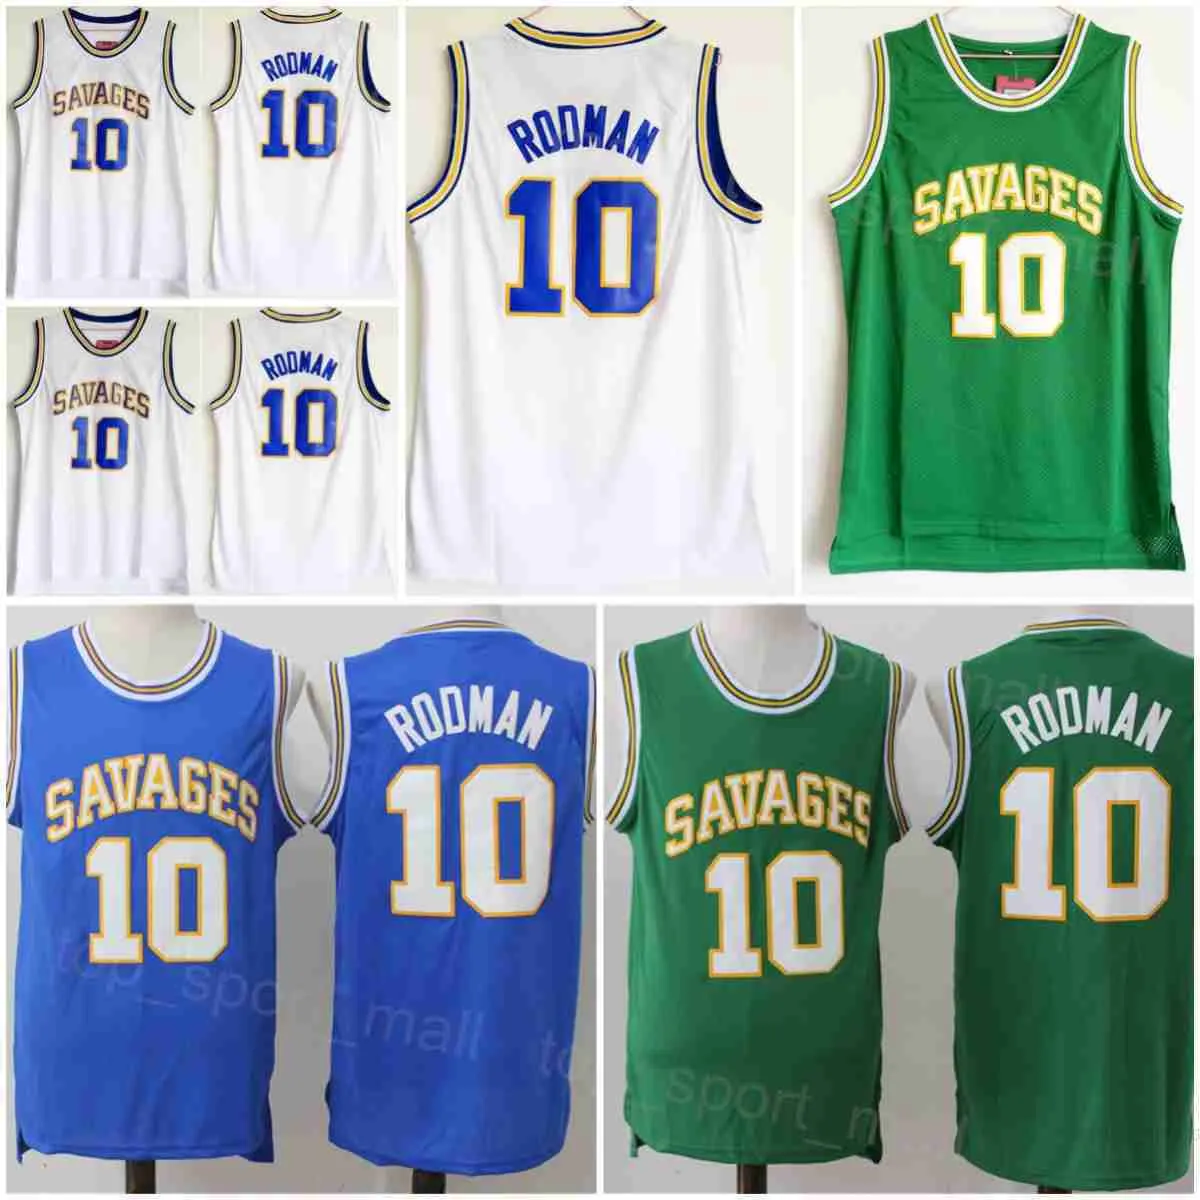 Oklahoma Savages Basketball Dennis Rodman Maillots 10 Lycée Collège Université Équipe Vert Blanc Bleu Tous Cousus Pour Les Fans De Sport Chemise Respirant NCAA